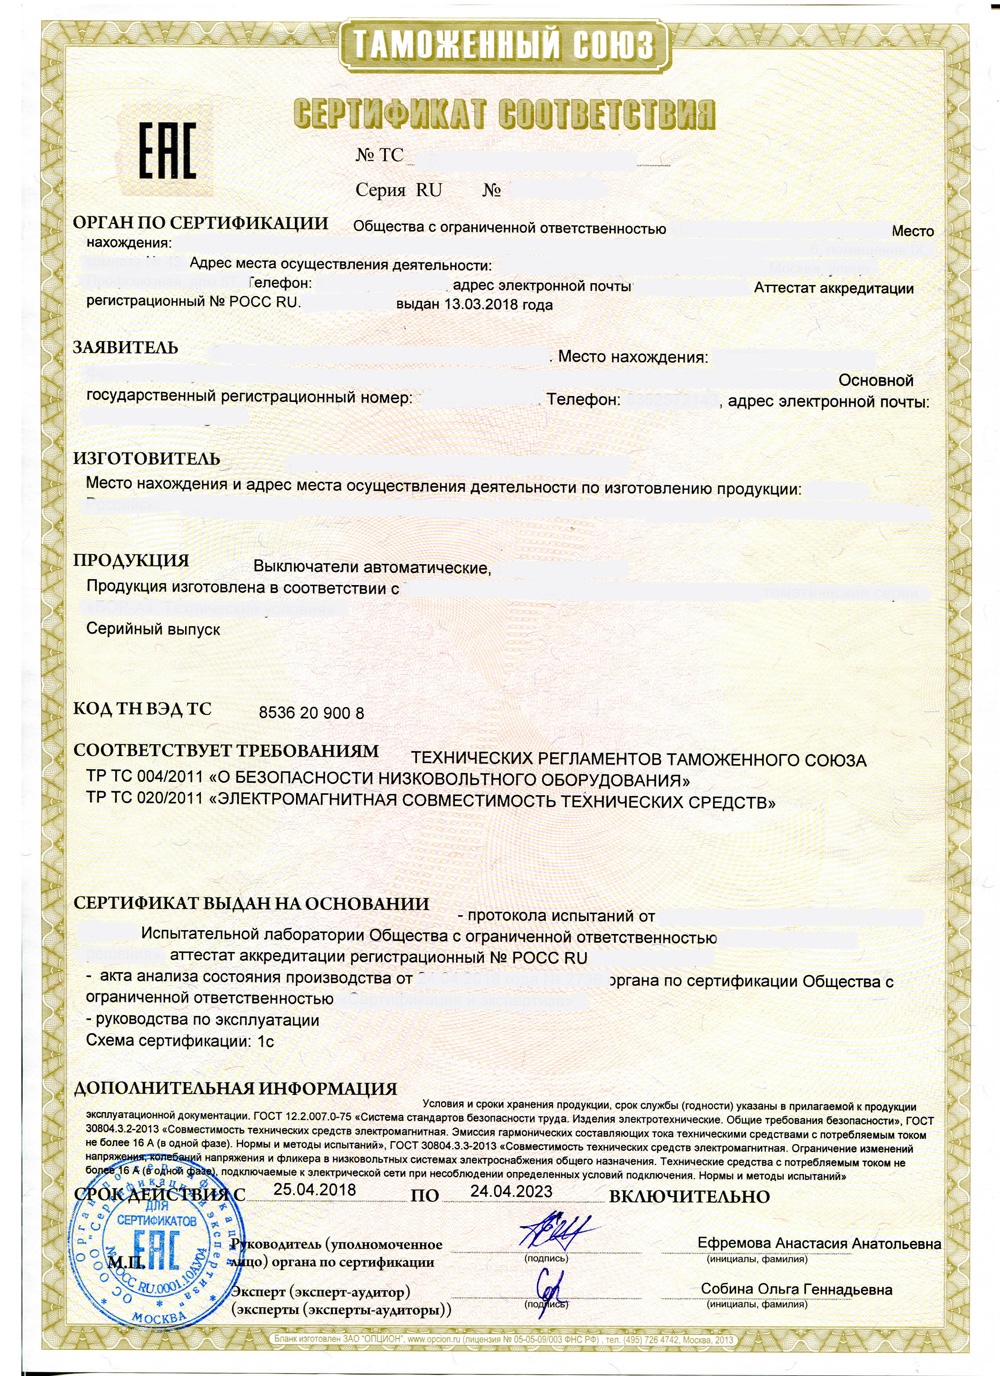 Certificate TR CU 004 020